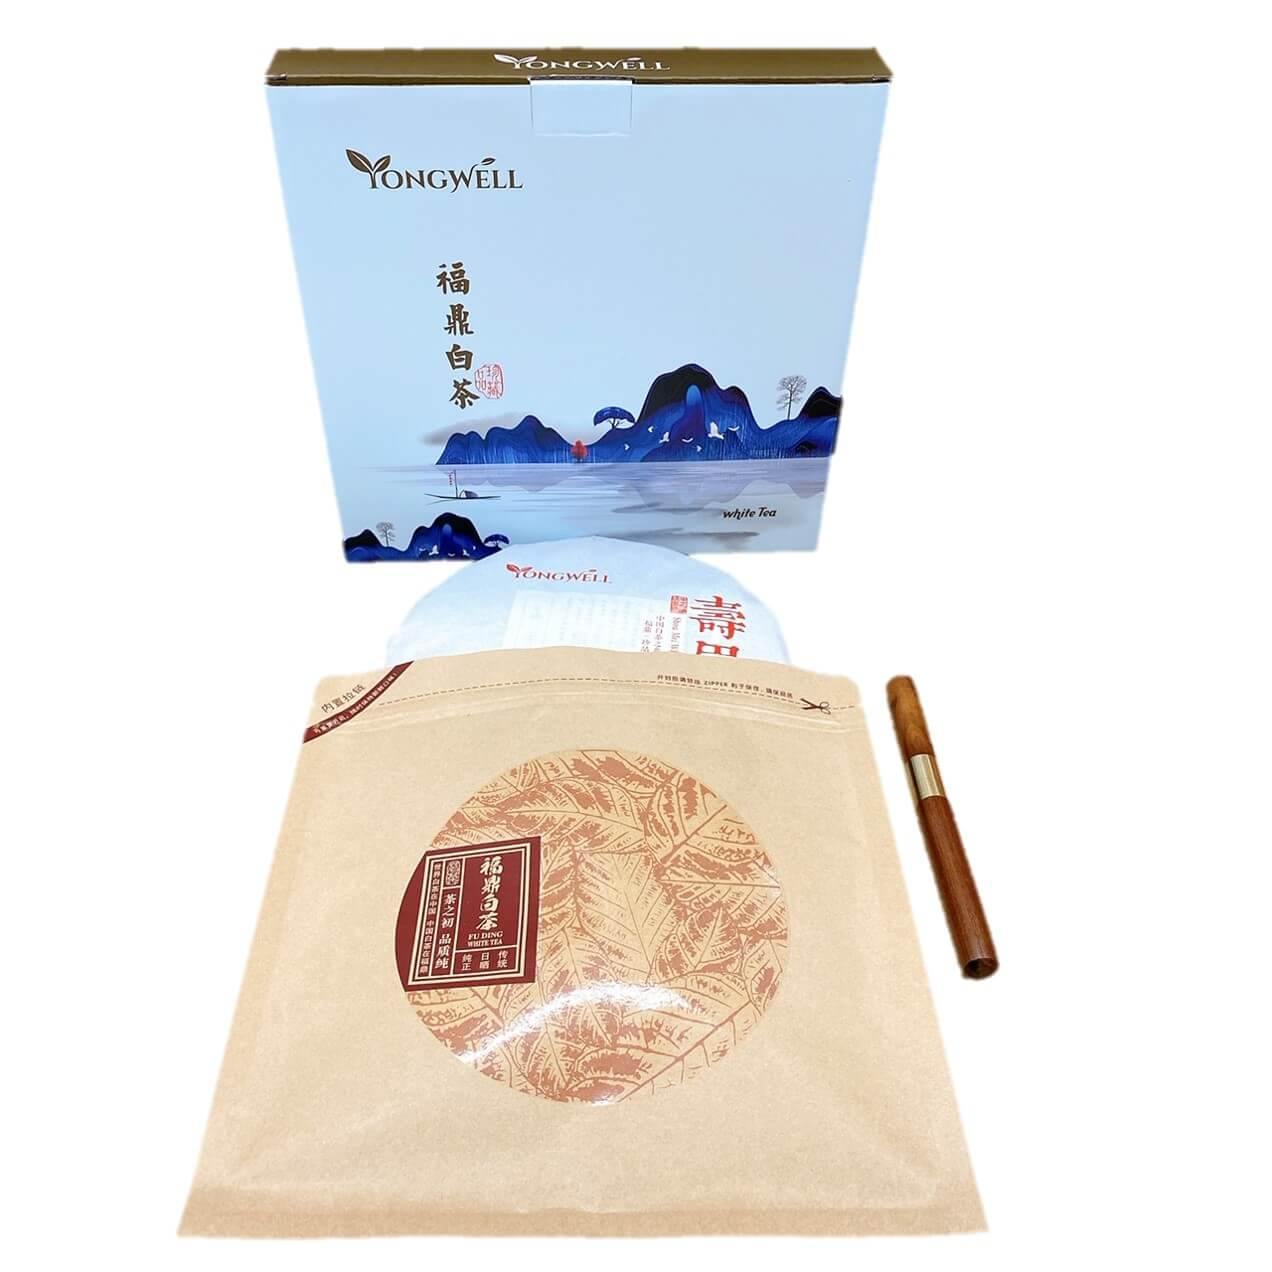 Meiji Premium Yan Yan Tiramisu (10 cup) – Shojikiya